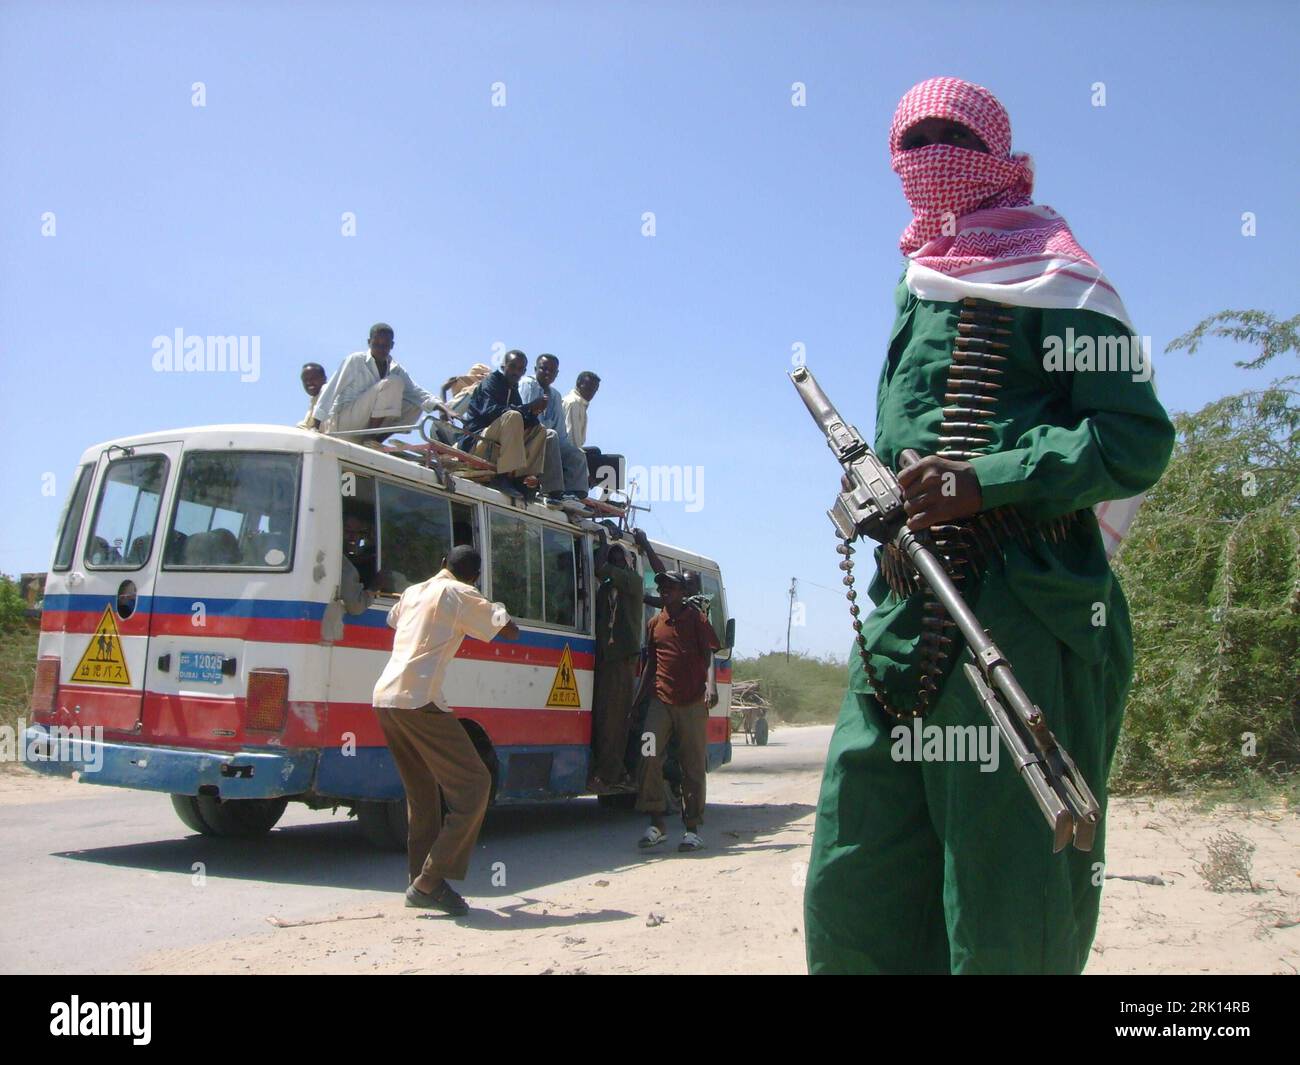 Bildnummer: 52854172  Datum: 19.01.2009  Copyright: imago/Xinhua Kämpfer der islamischen al-Shahab Militia während einer Minenräumung ihrer Organisation im von äthiopischen Truppen geräumten Mogadischu - Somalia - PUBLICATIONxNOTxINxCHN , Personen; 2009, premiumd, Somalia, Mineräumung, Minensuche, Land, Leute, Suche, Räumung, Mine, Landmine; , quer, Kbdig, , Islam, Religion,  ,  , Afrika o0 Gruppenbild    Bildnummer 52854172 Date 19 01 2009 Copyright Imago XINHUA Fighters the Islamic Al Shahab Militia during a Demining their Organization in from Ethiopian Troops cleared Mogadishu Somalia PUBLI Stock Photo